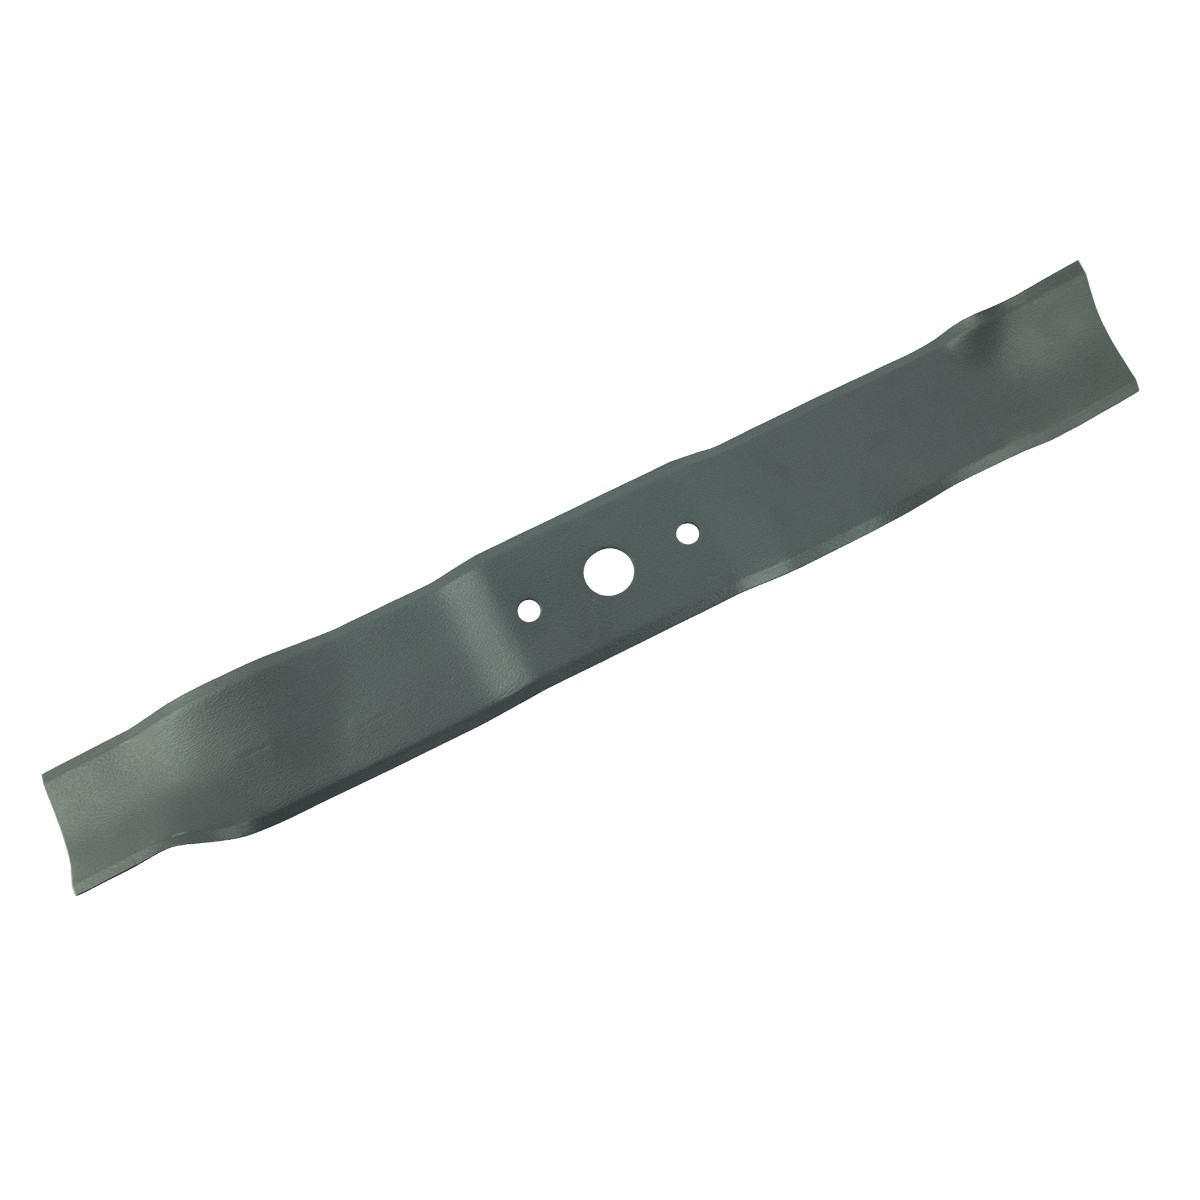 Messer für Stiga Collector 46/440 mm / 181004365/3 Mäher